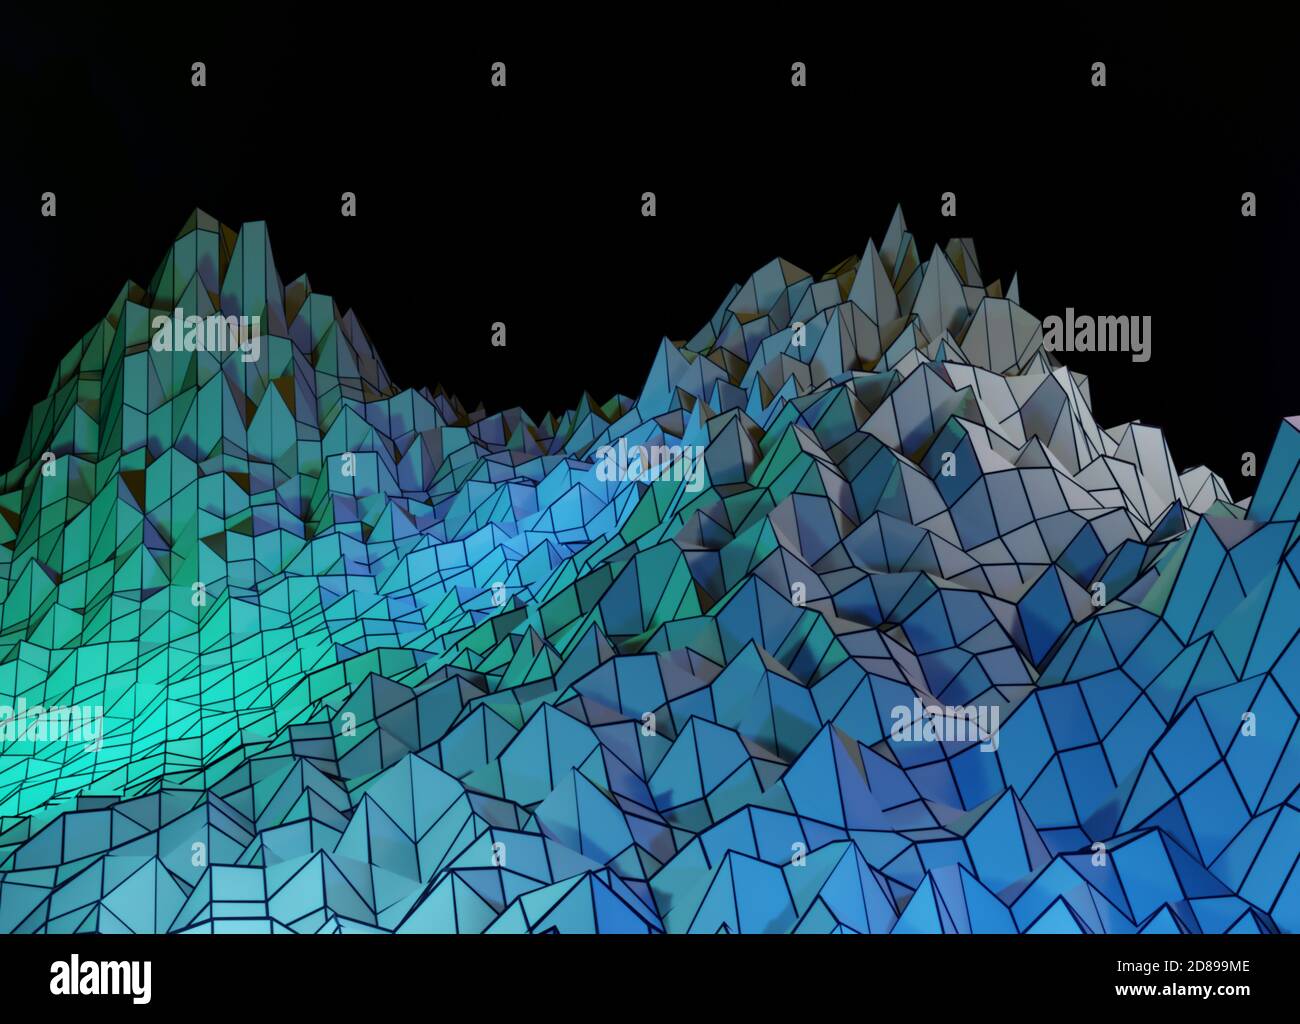 Visualizzazione dati immagine orizzontale astratta. Illustrazione Vettoriale